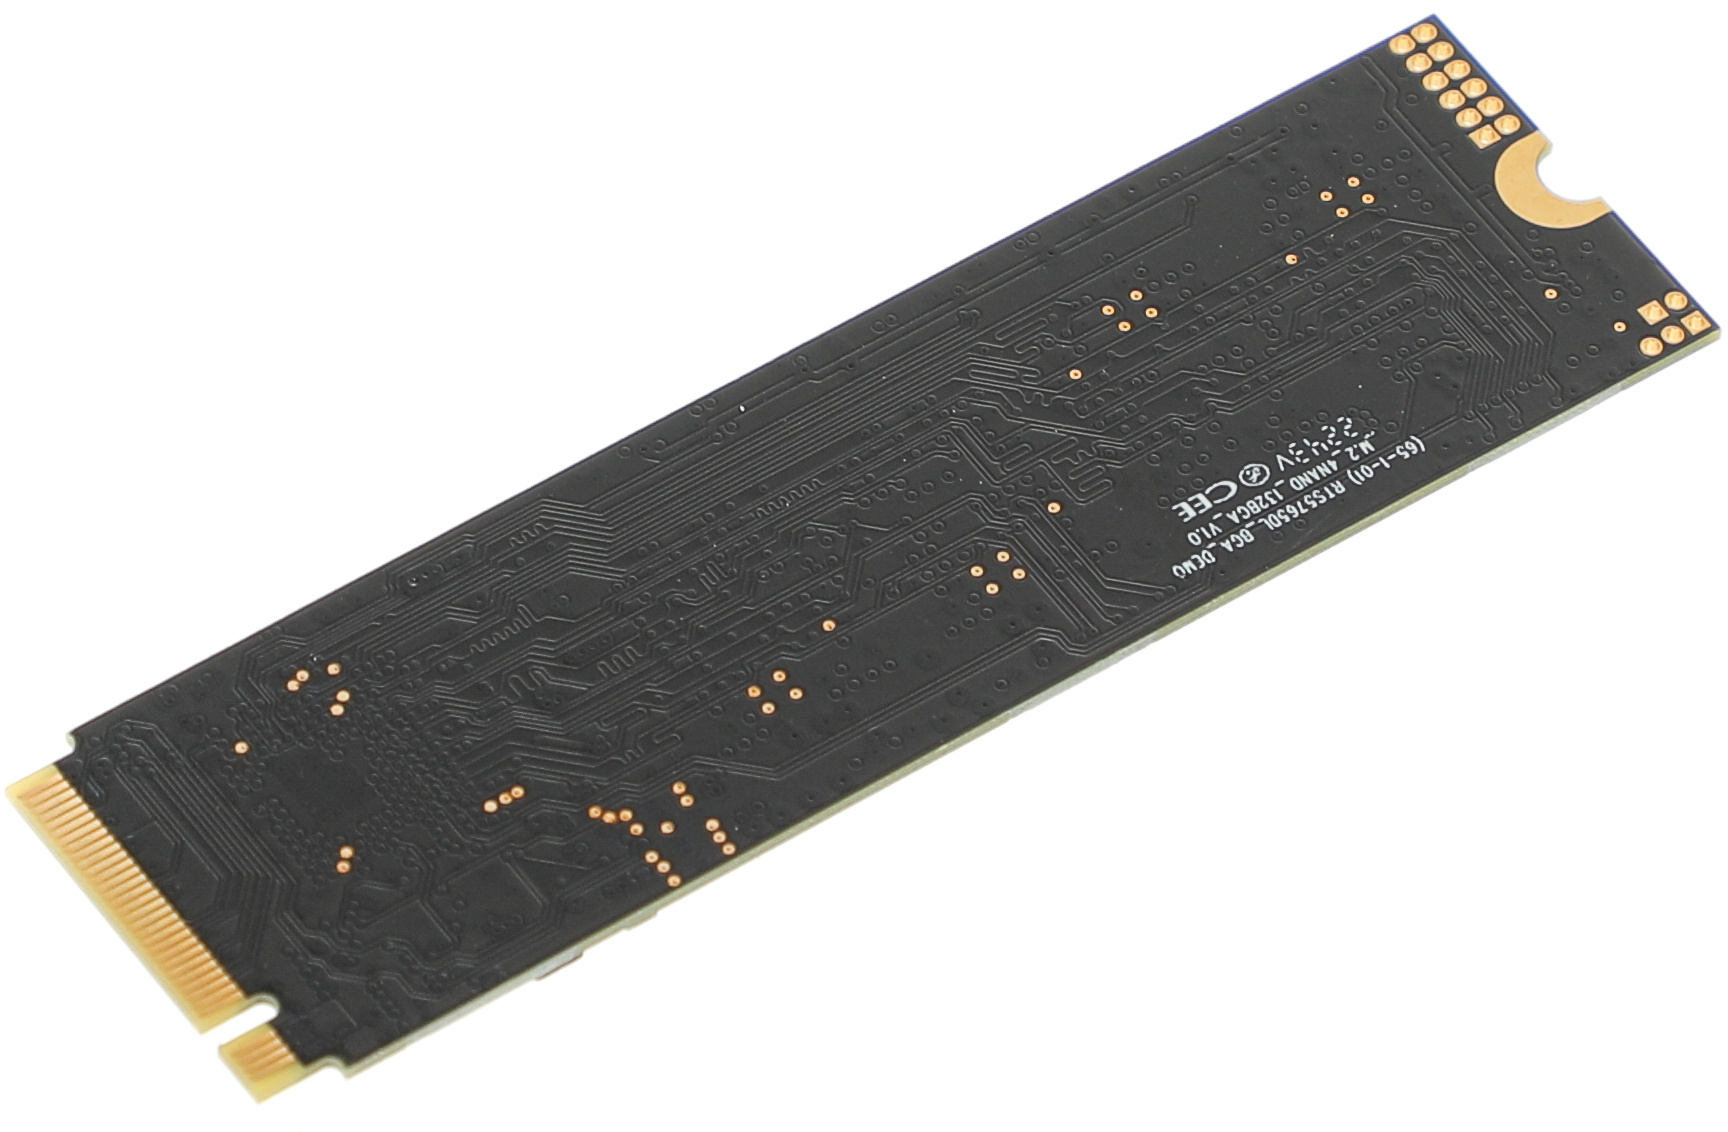 SSD  SunWind NV3 SWSSD001TN3T 1, M.2 2280, PCIe 3.0 x4,  NVMe,  M.2,  rtl